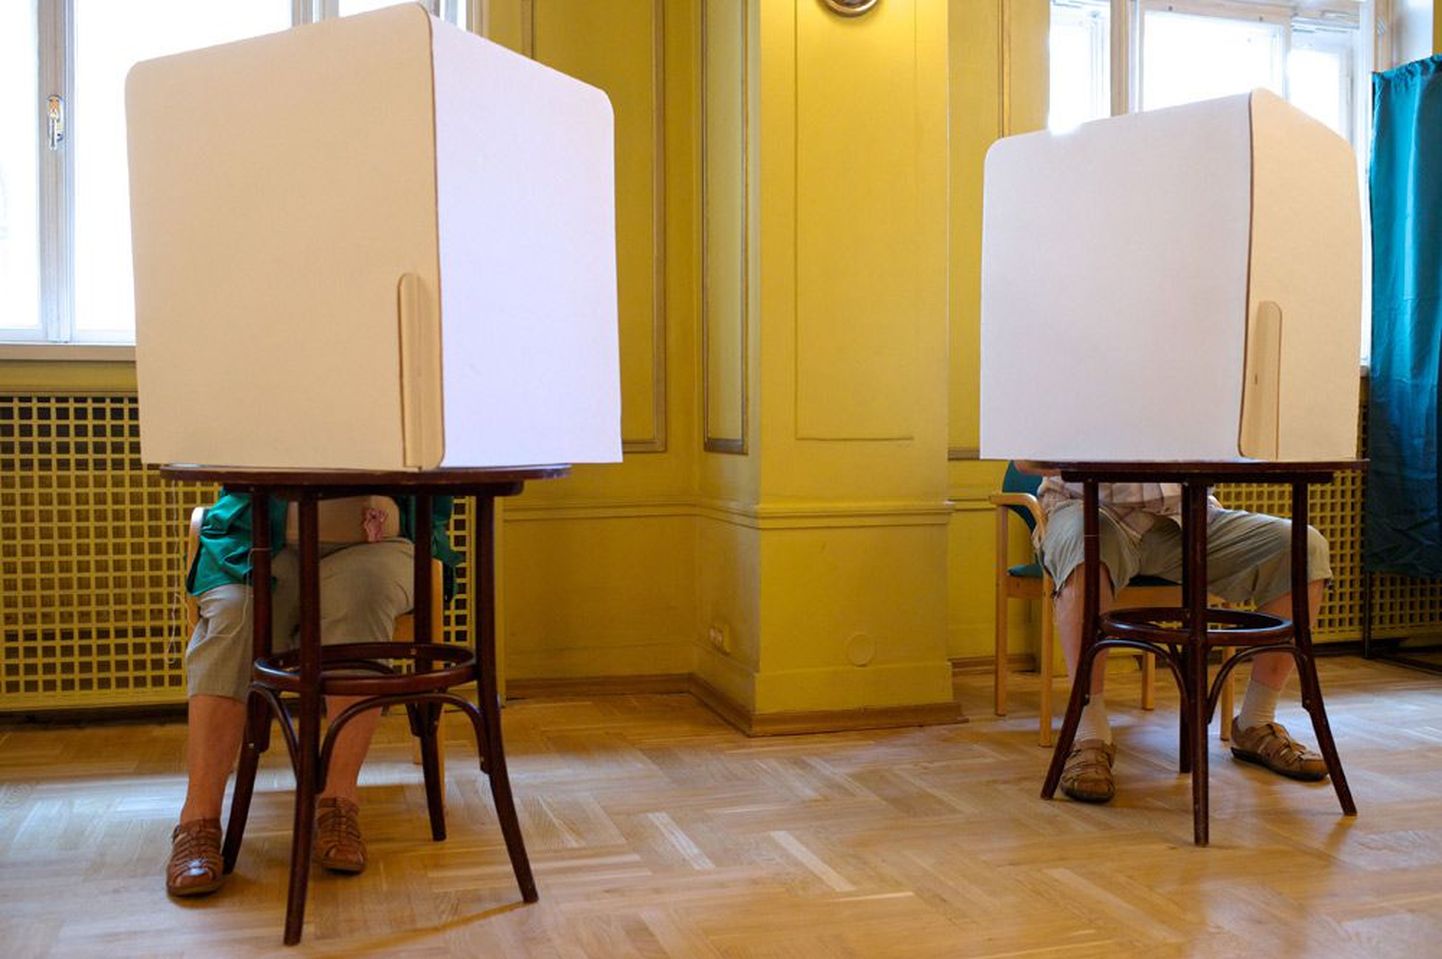 Täna peaks Läti põhiseaduskomisjon andma signaali, kas suvel seimi laialisaatmise referendumil kasutusel olnud valimissedelite täitmise lauad tuleb 18. veebruariks tolmust puhtaks pühkida või ei.